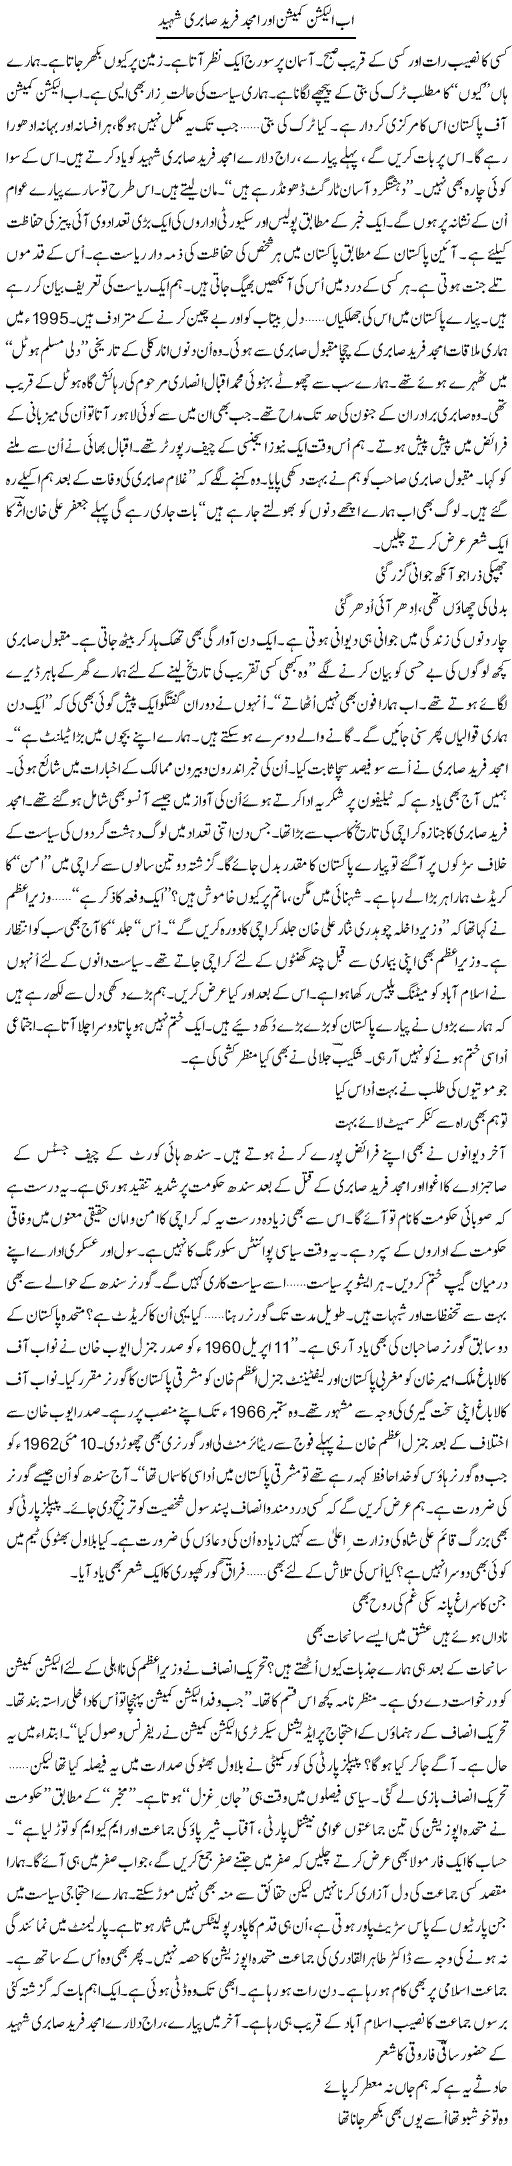 Ab Election Commission Aor Amjad Fareed Sabri Shaheed | Ejaz Hafeez Khan | Daily Urdu Columns